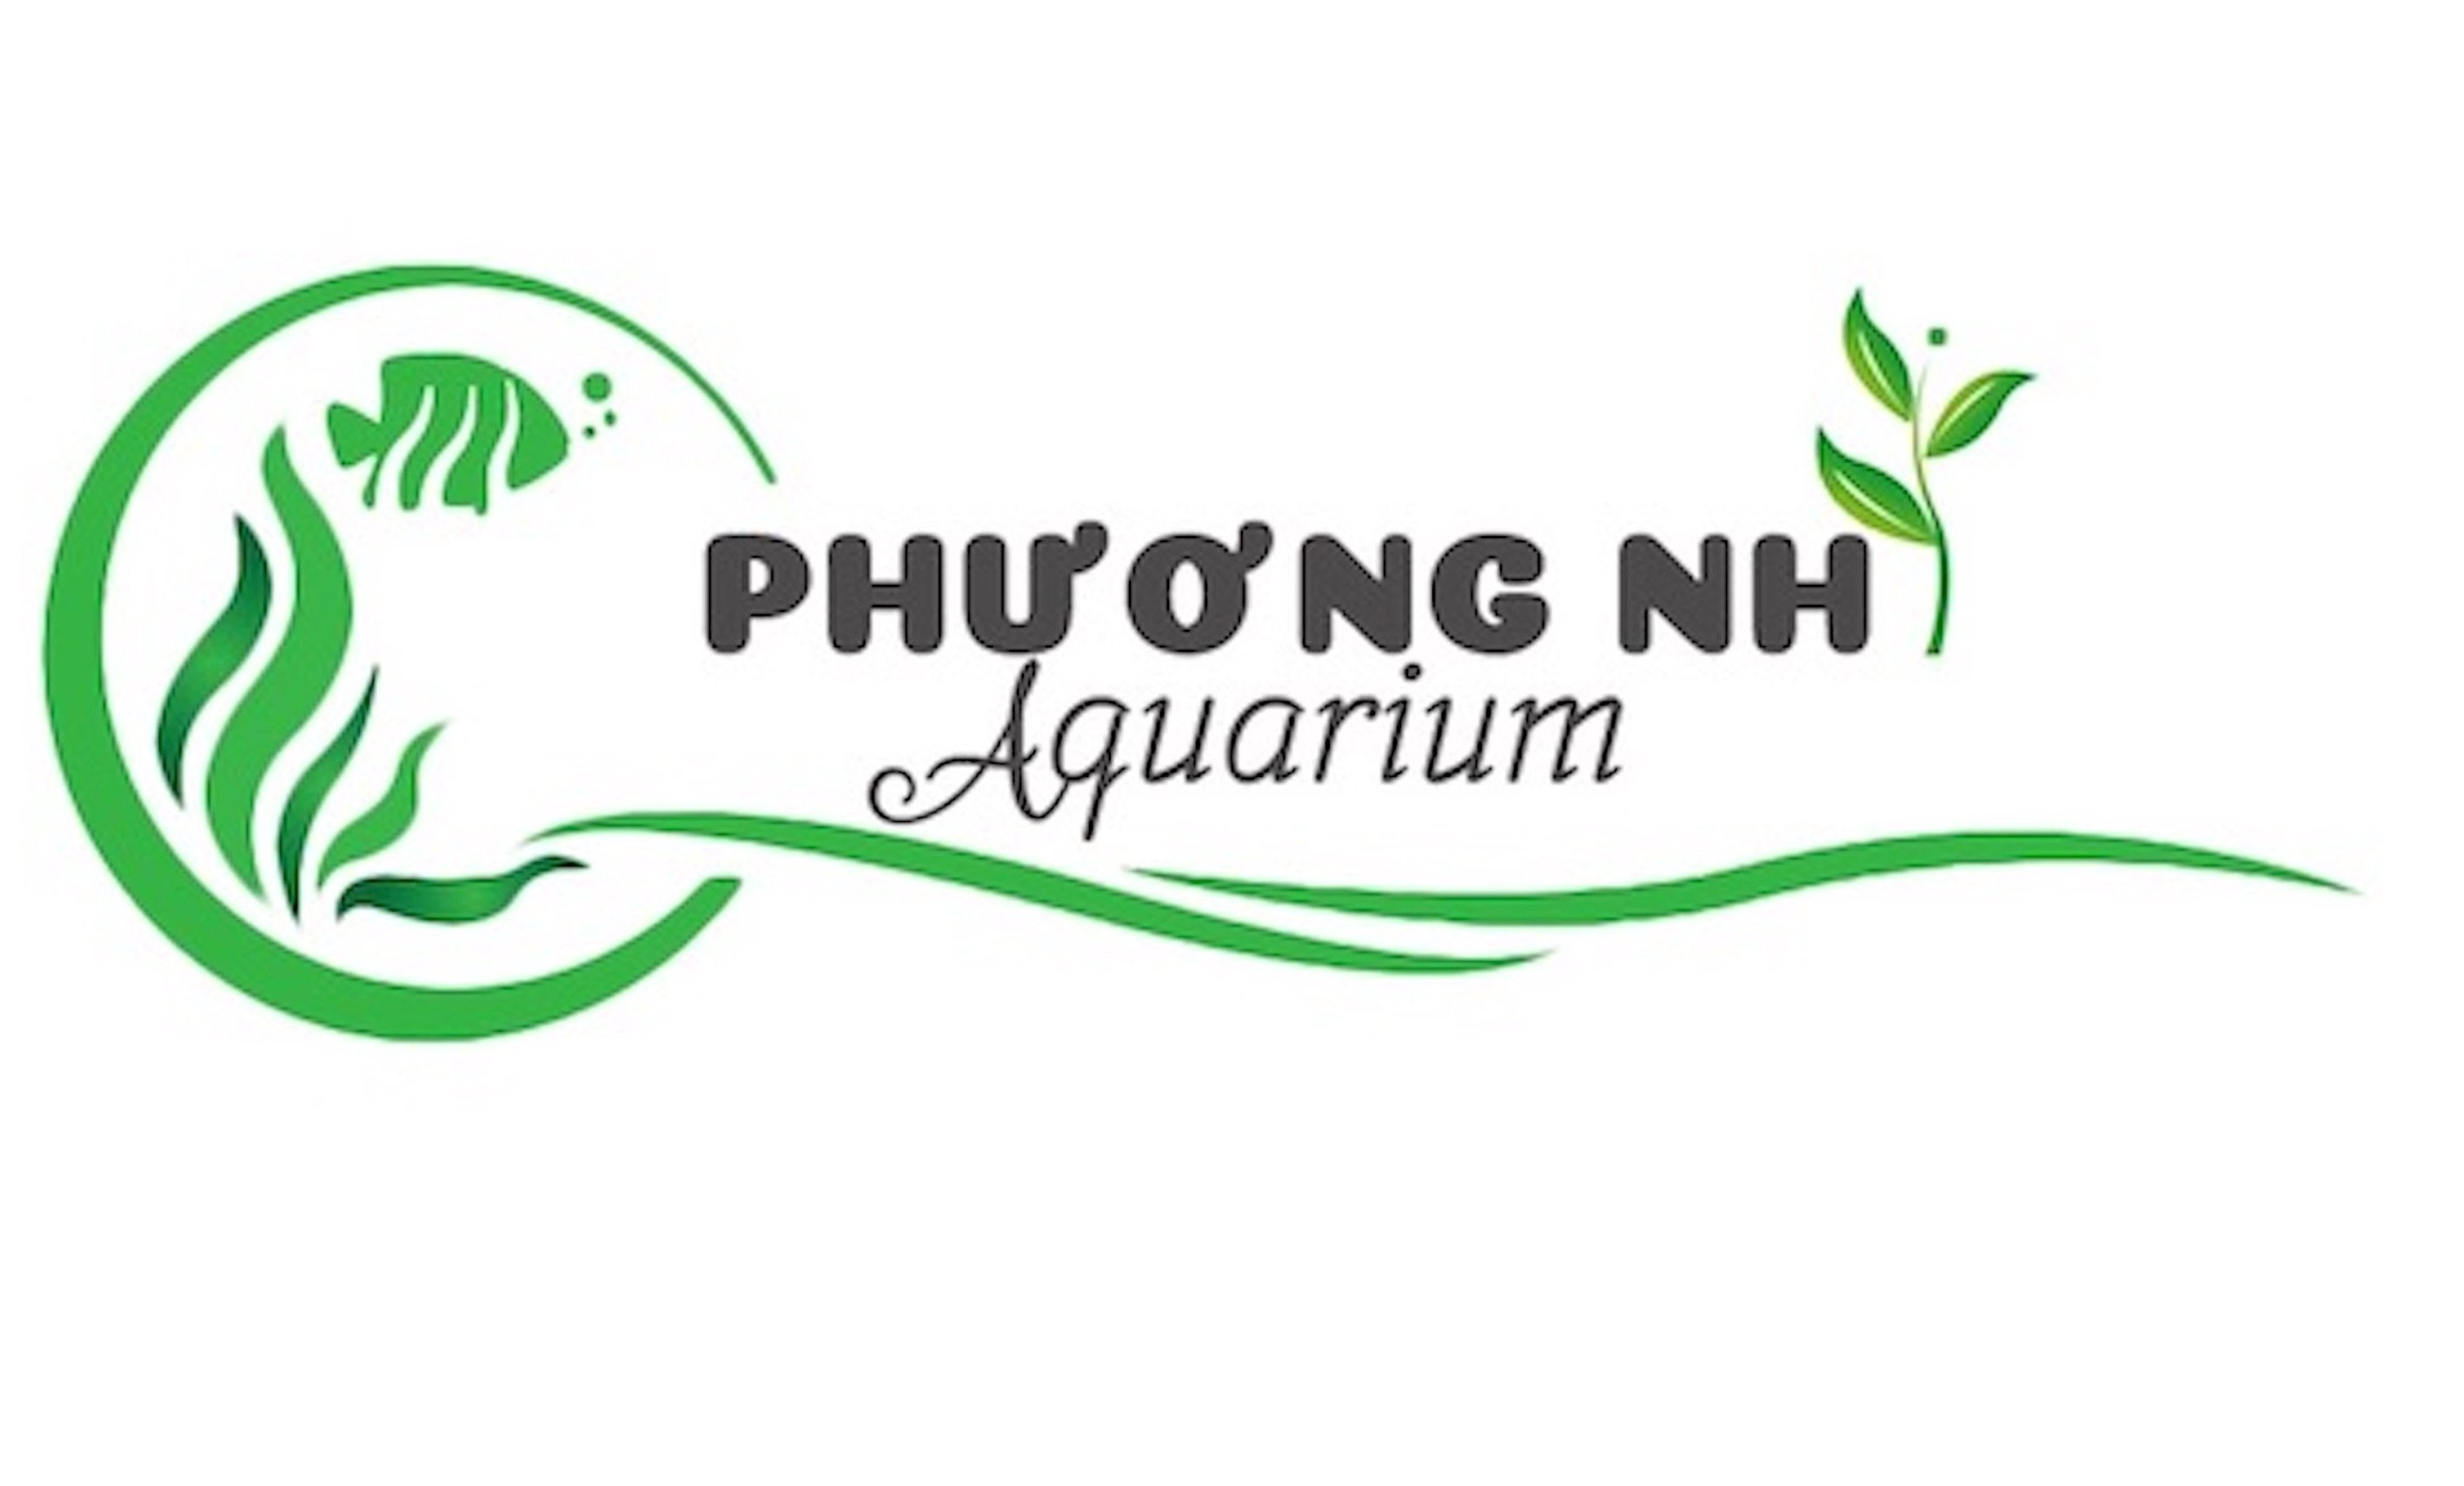 Cây thuỷ sinh Thanh hồ điệp-Phương nhi aquarium